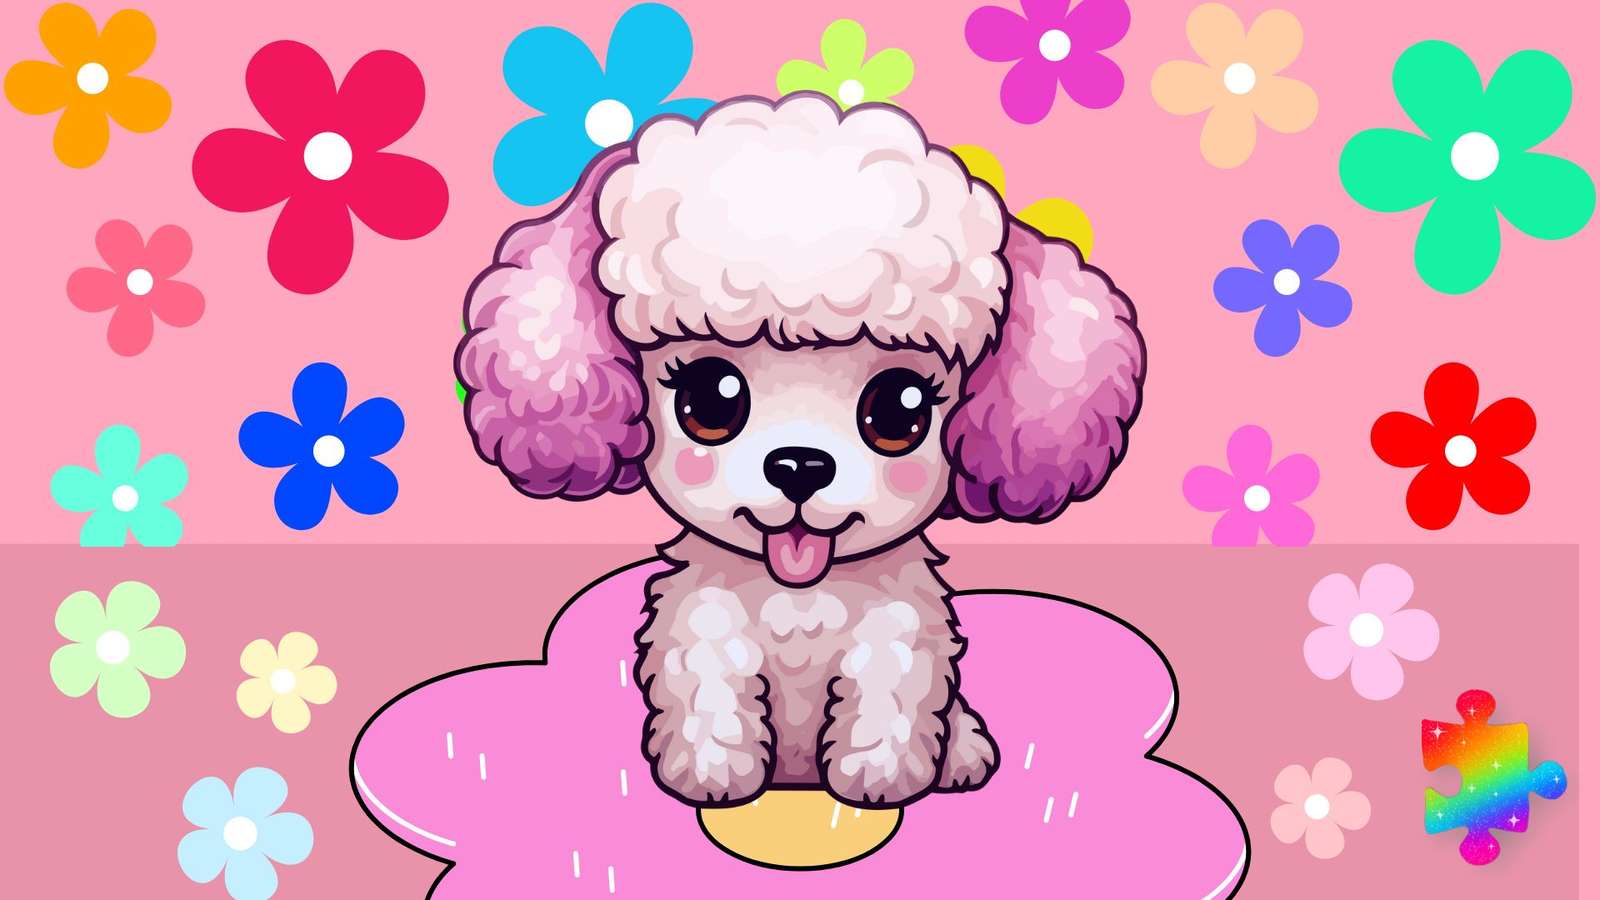 Cute Flower Poodle puzzle online